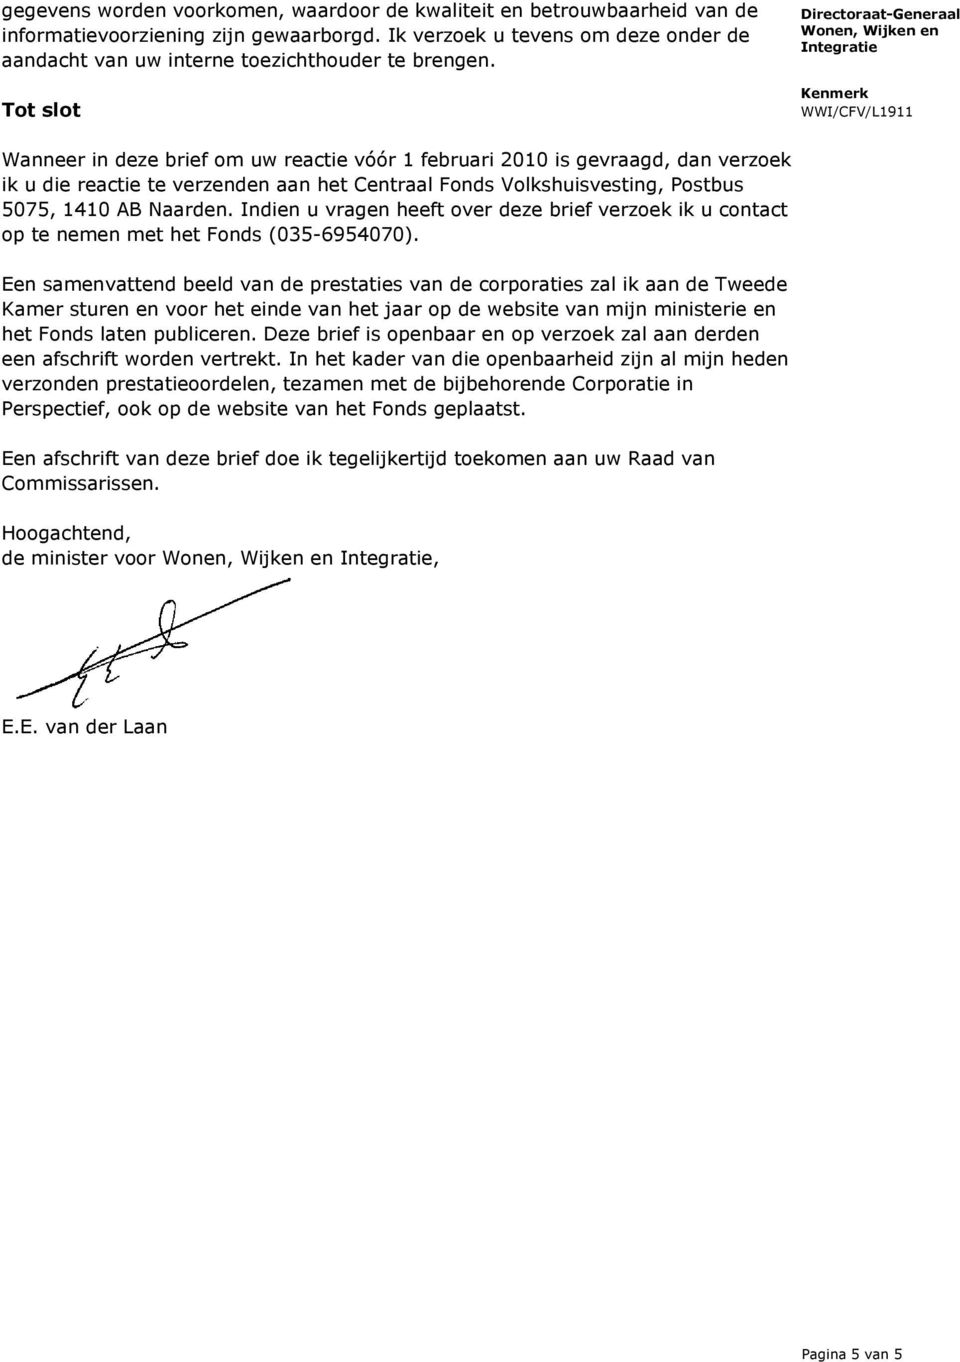 Tot slot Wanneer in deze brief om uw reactie vóór 1 februari 2010 is gevraagd, dan verzoek ik u die reactie te verzenden aan het Centraal Fonds Volkshuisvesting, Postbus 5075, 1410 AB Naarden.